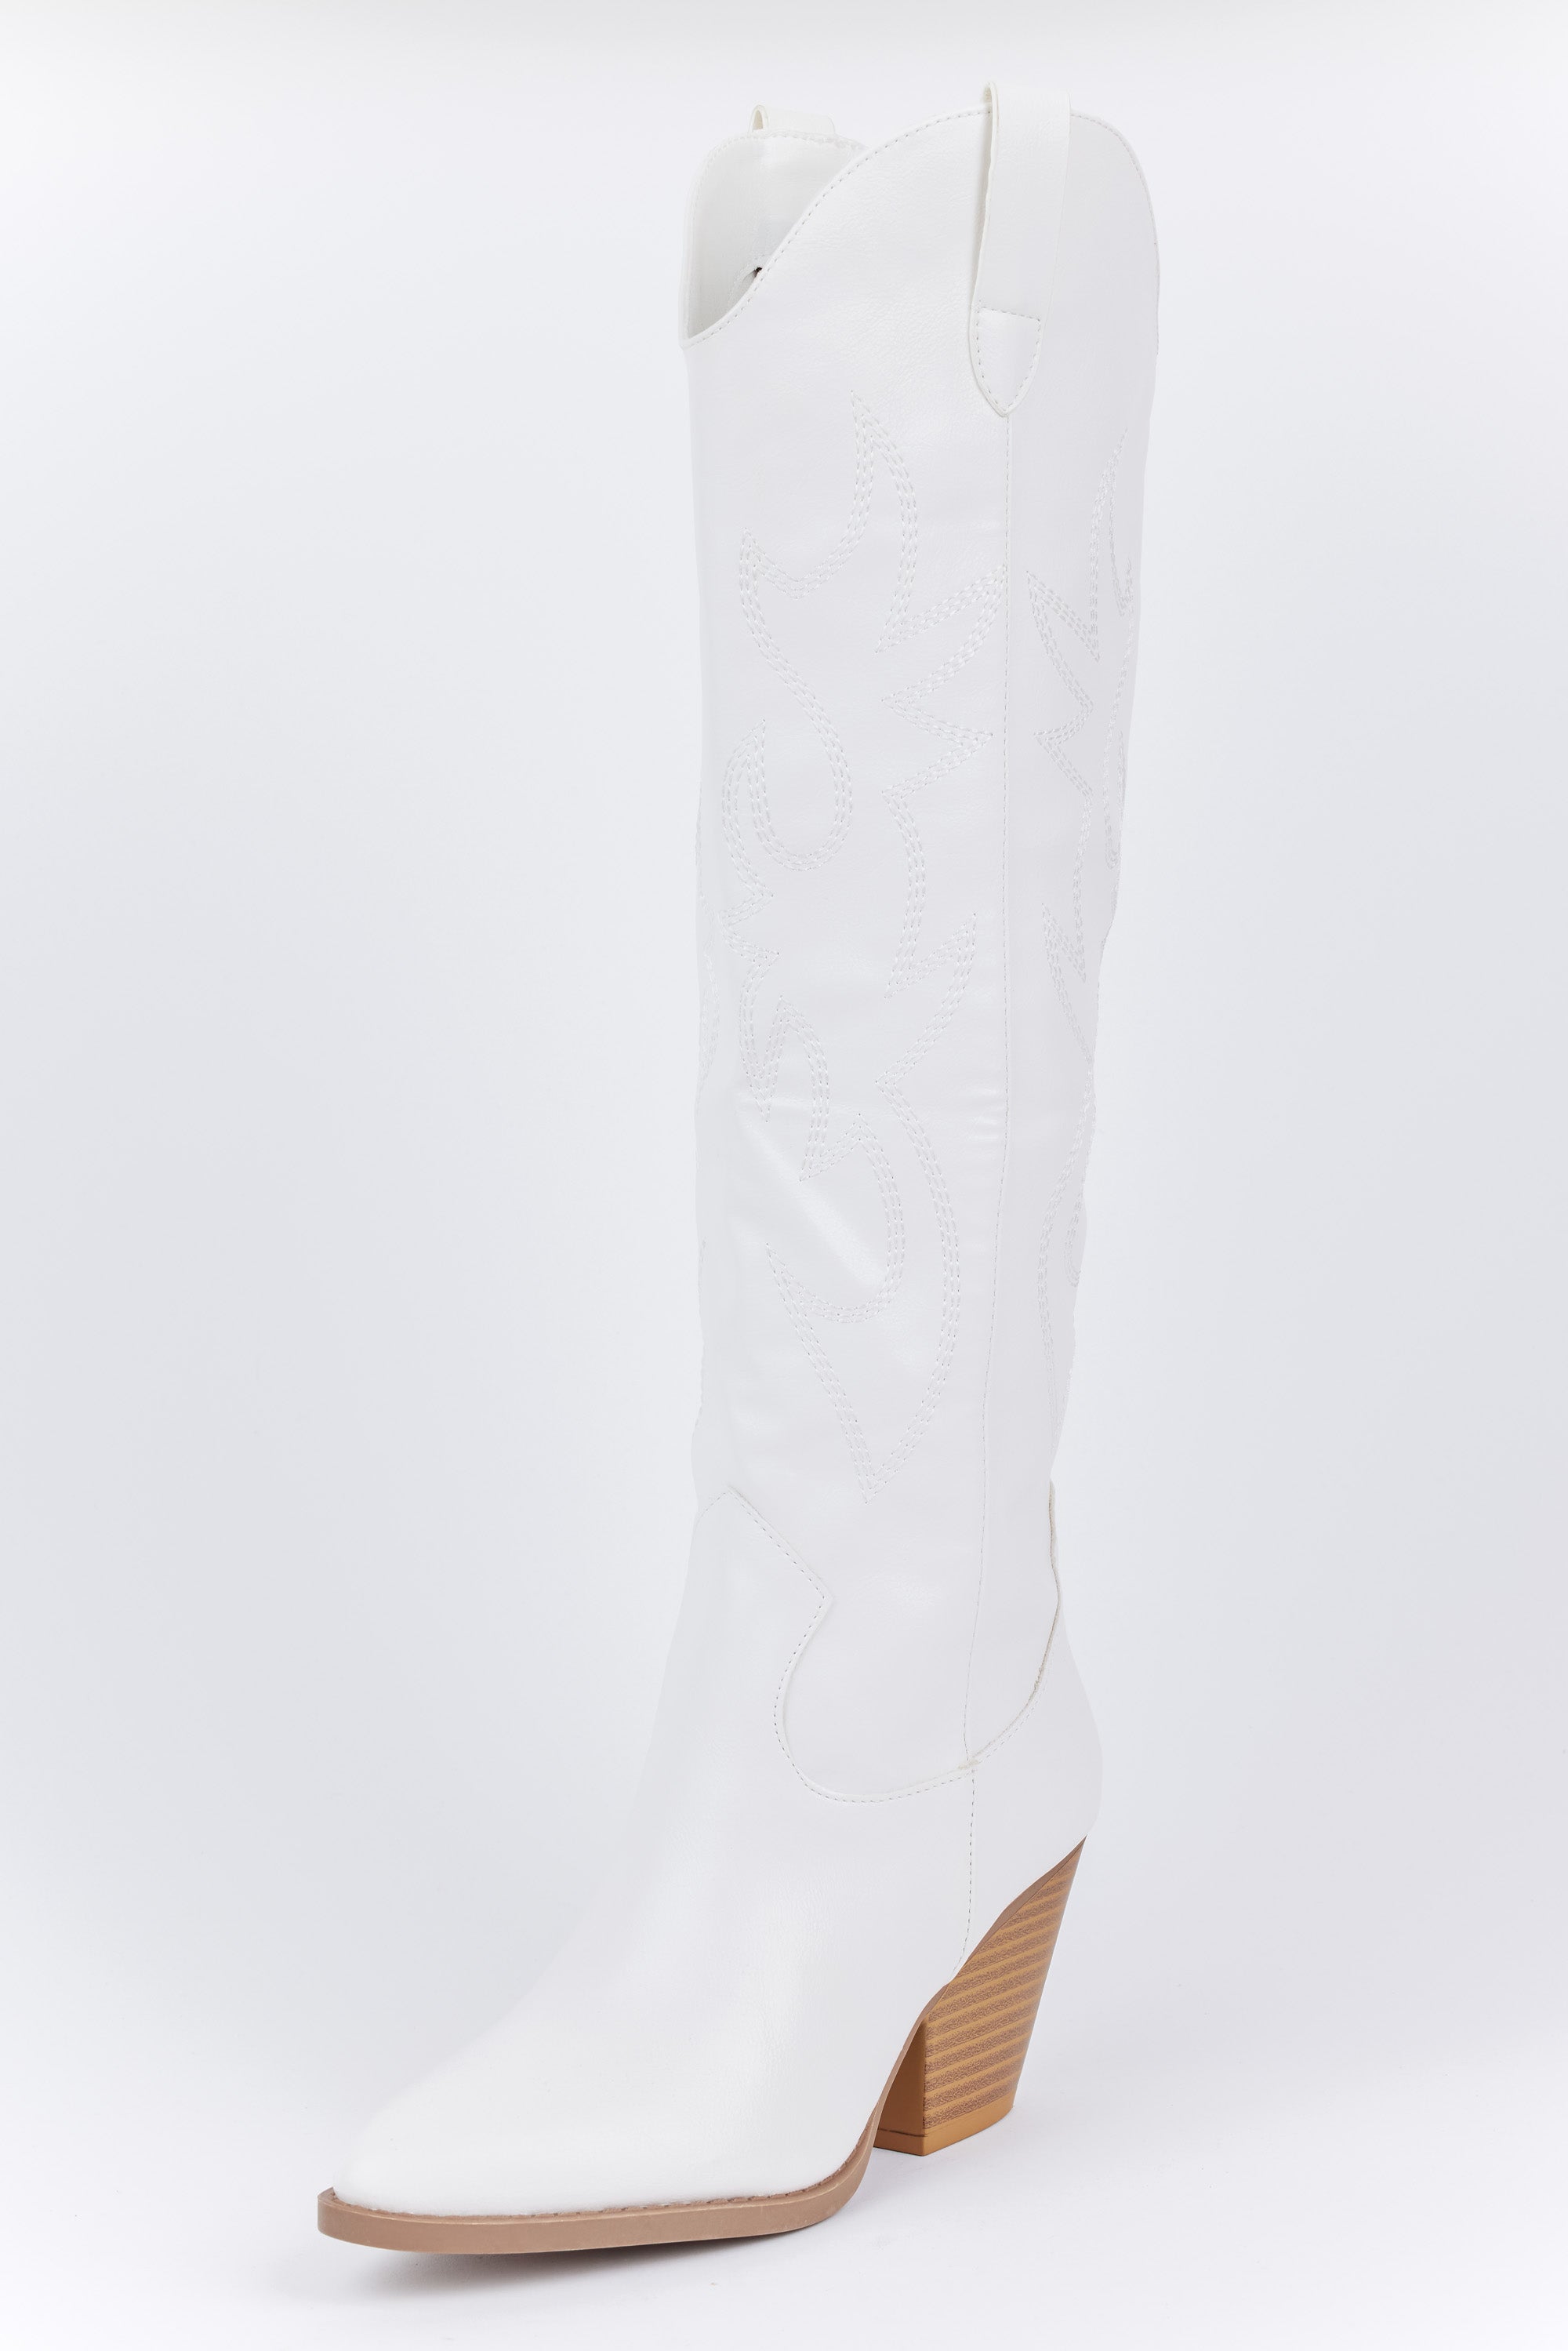 Savannah Boots - White